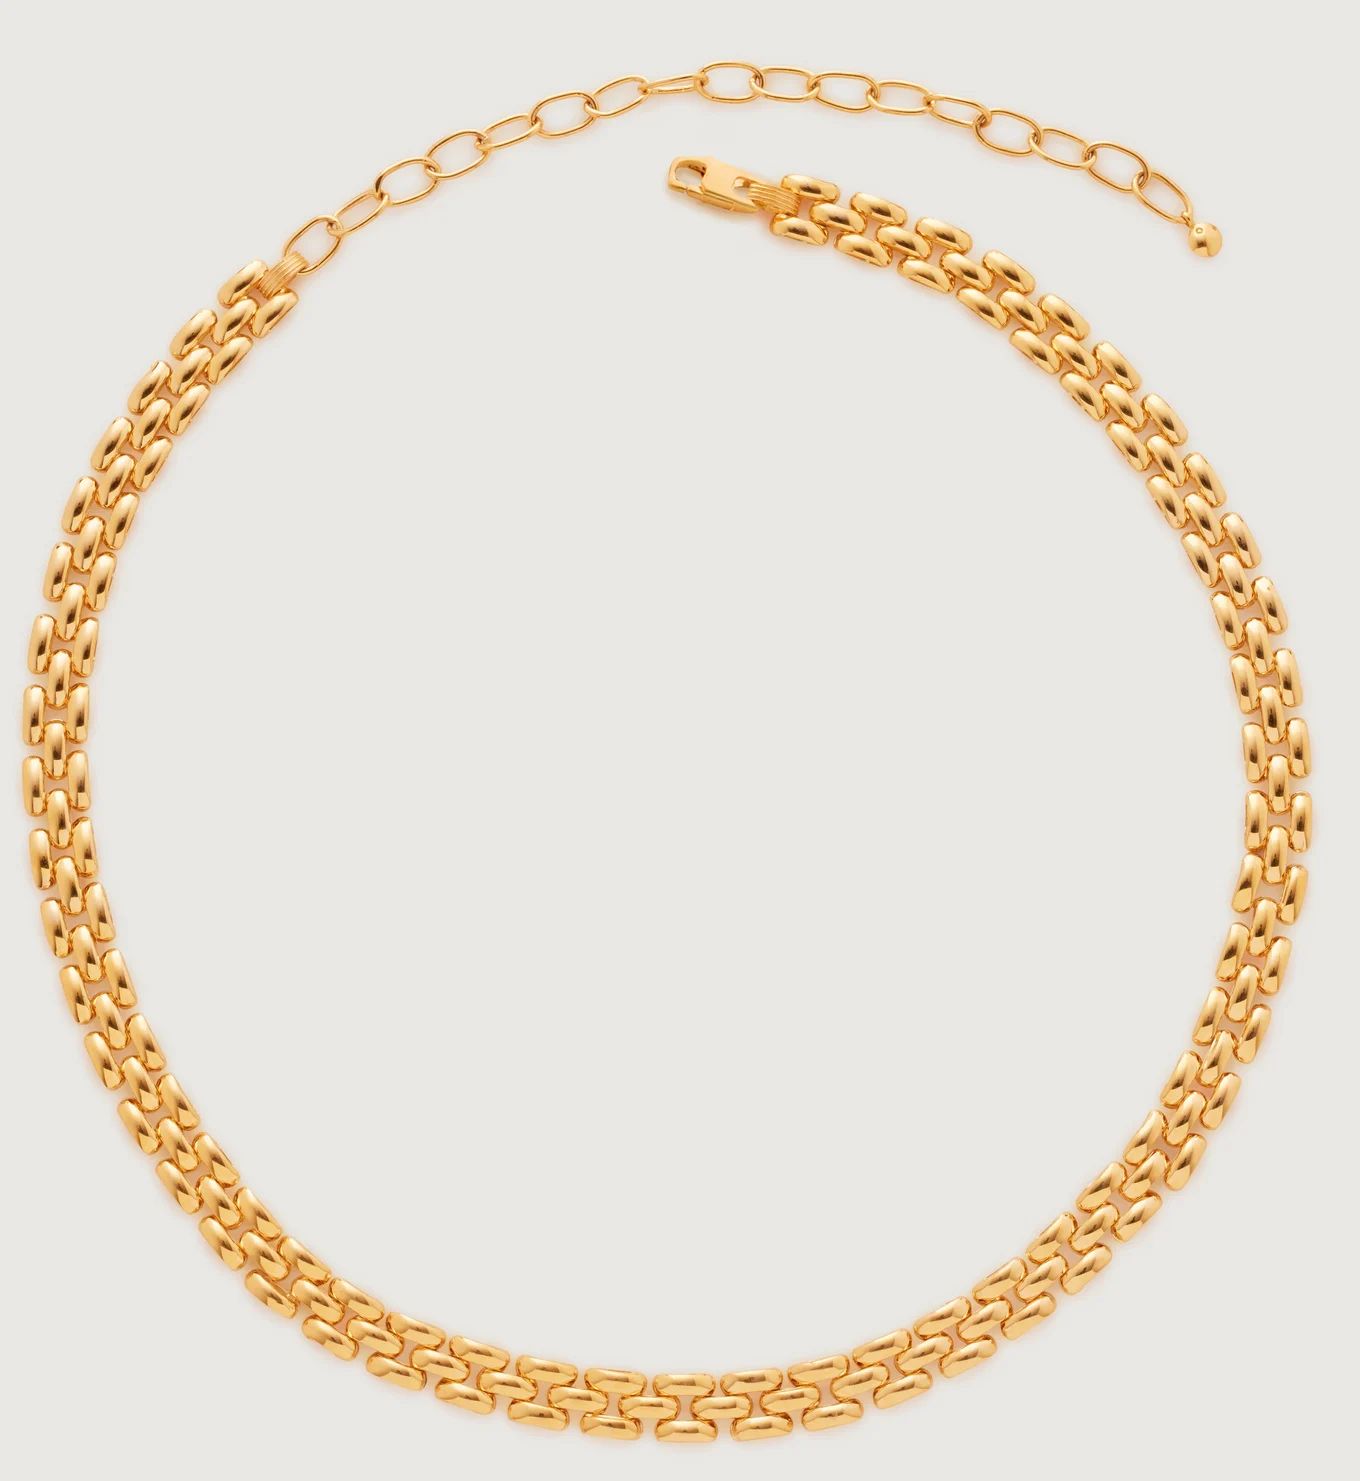 Heirloom Necklace Adjustable 36-46cm/14-18' | Monica Vinader (Global)